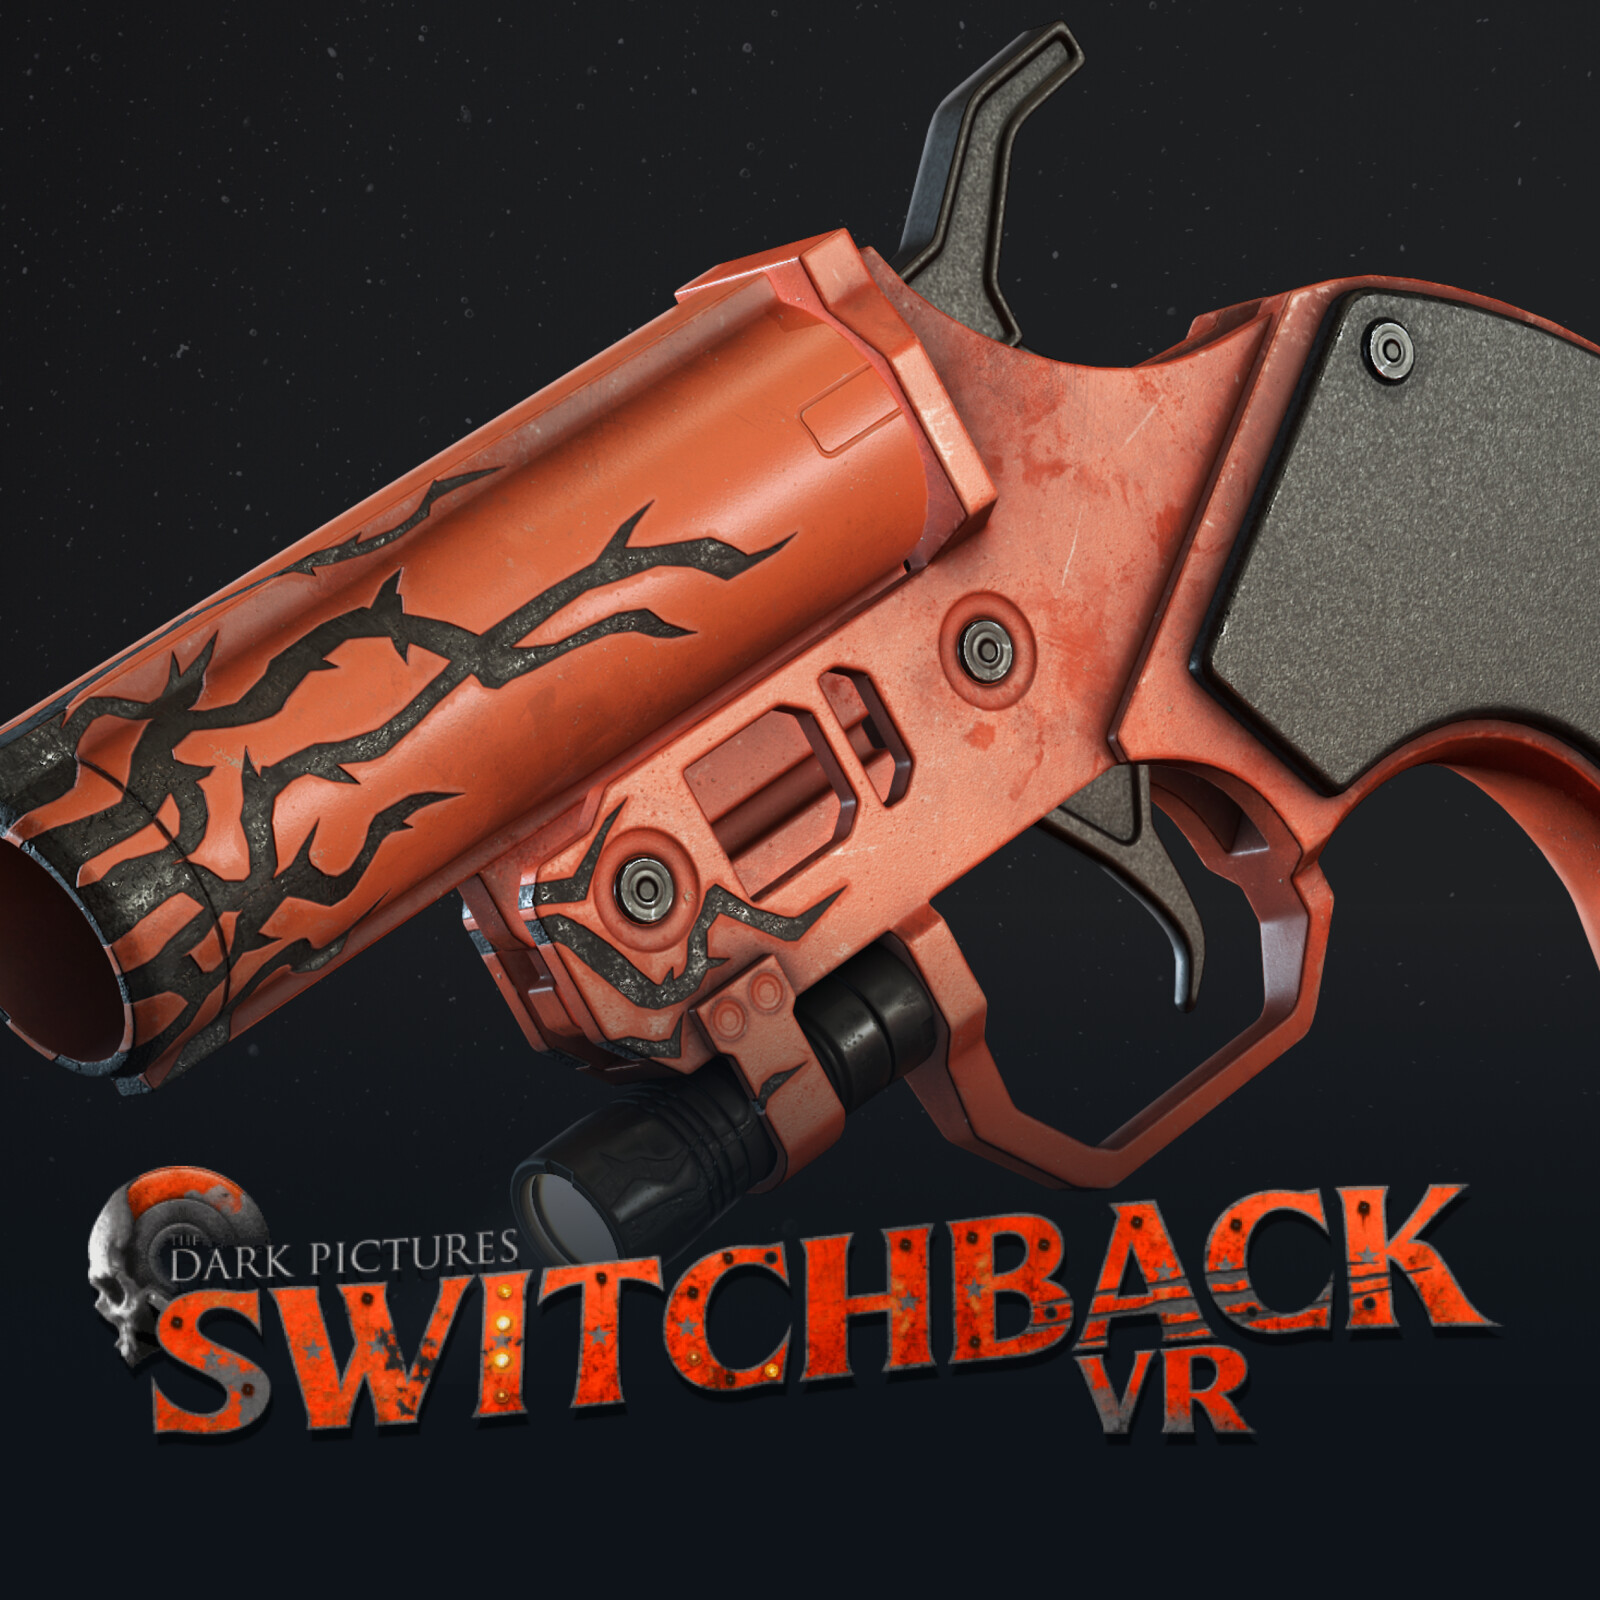 Switchback VR - Flare Gun